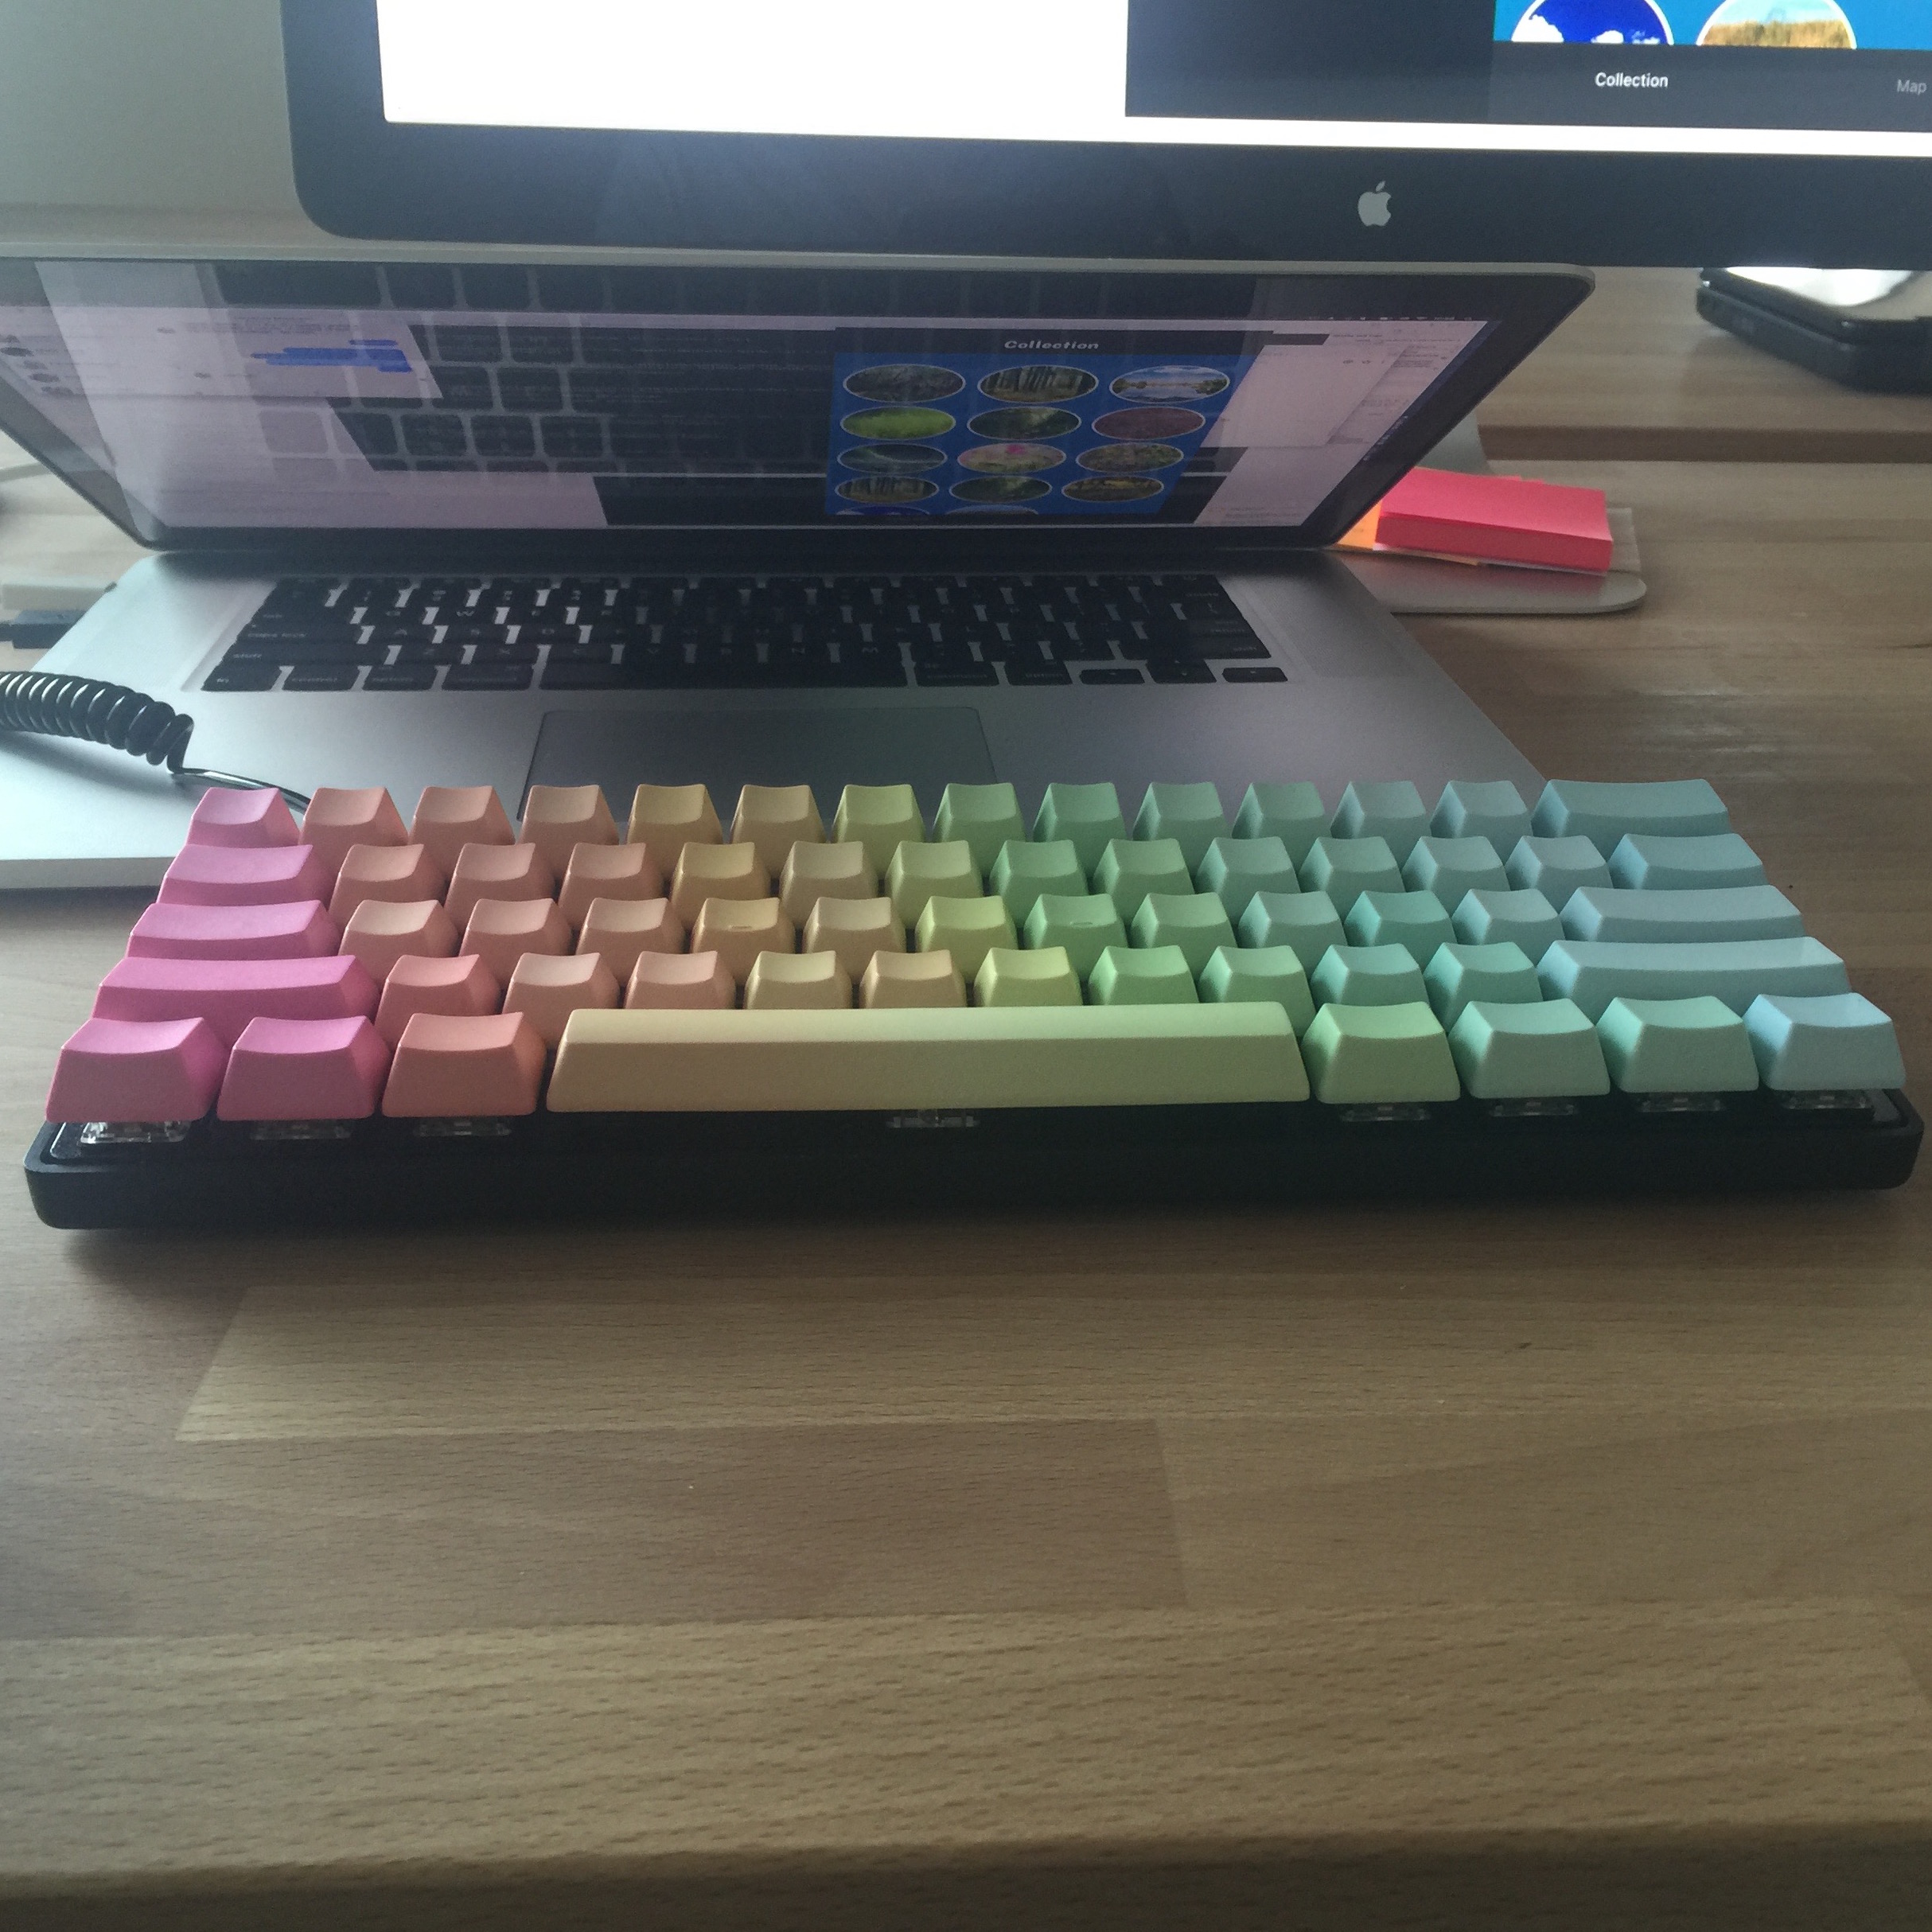 Rainbow keycaps